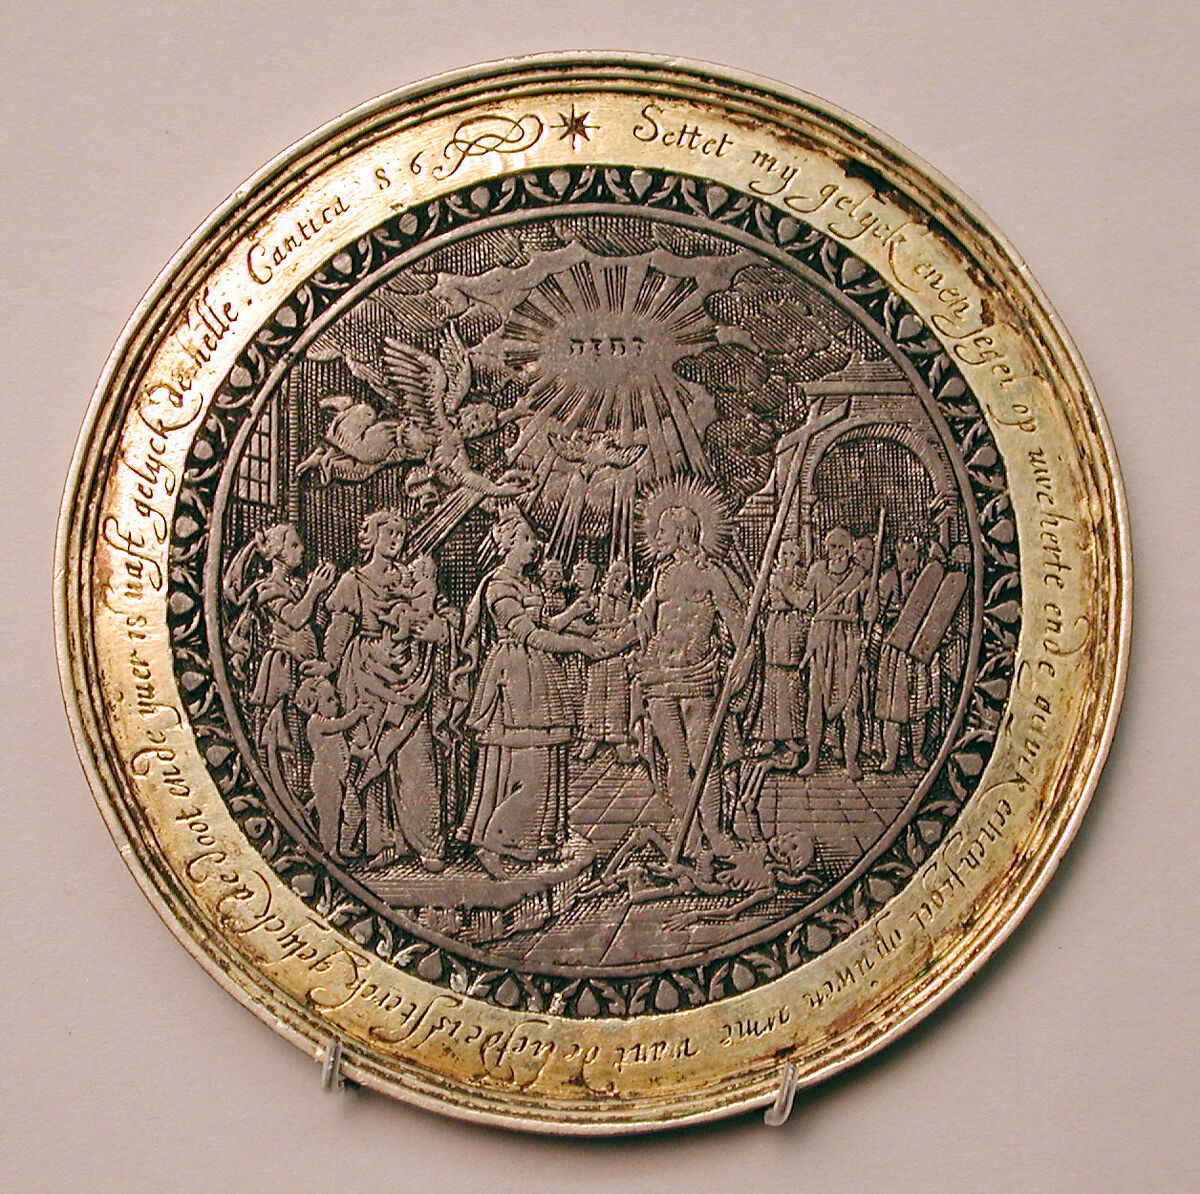 Wedding medallion, Silver, parcel-gilt, Dutch 